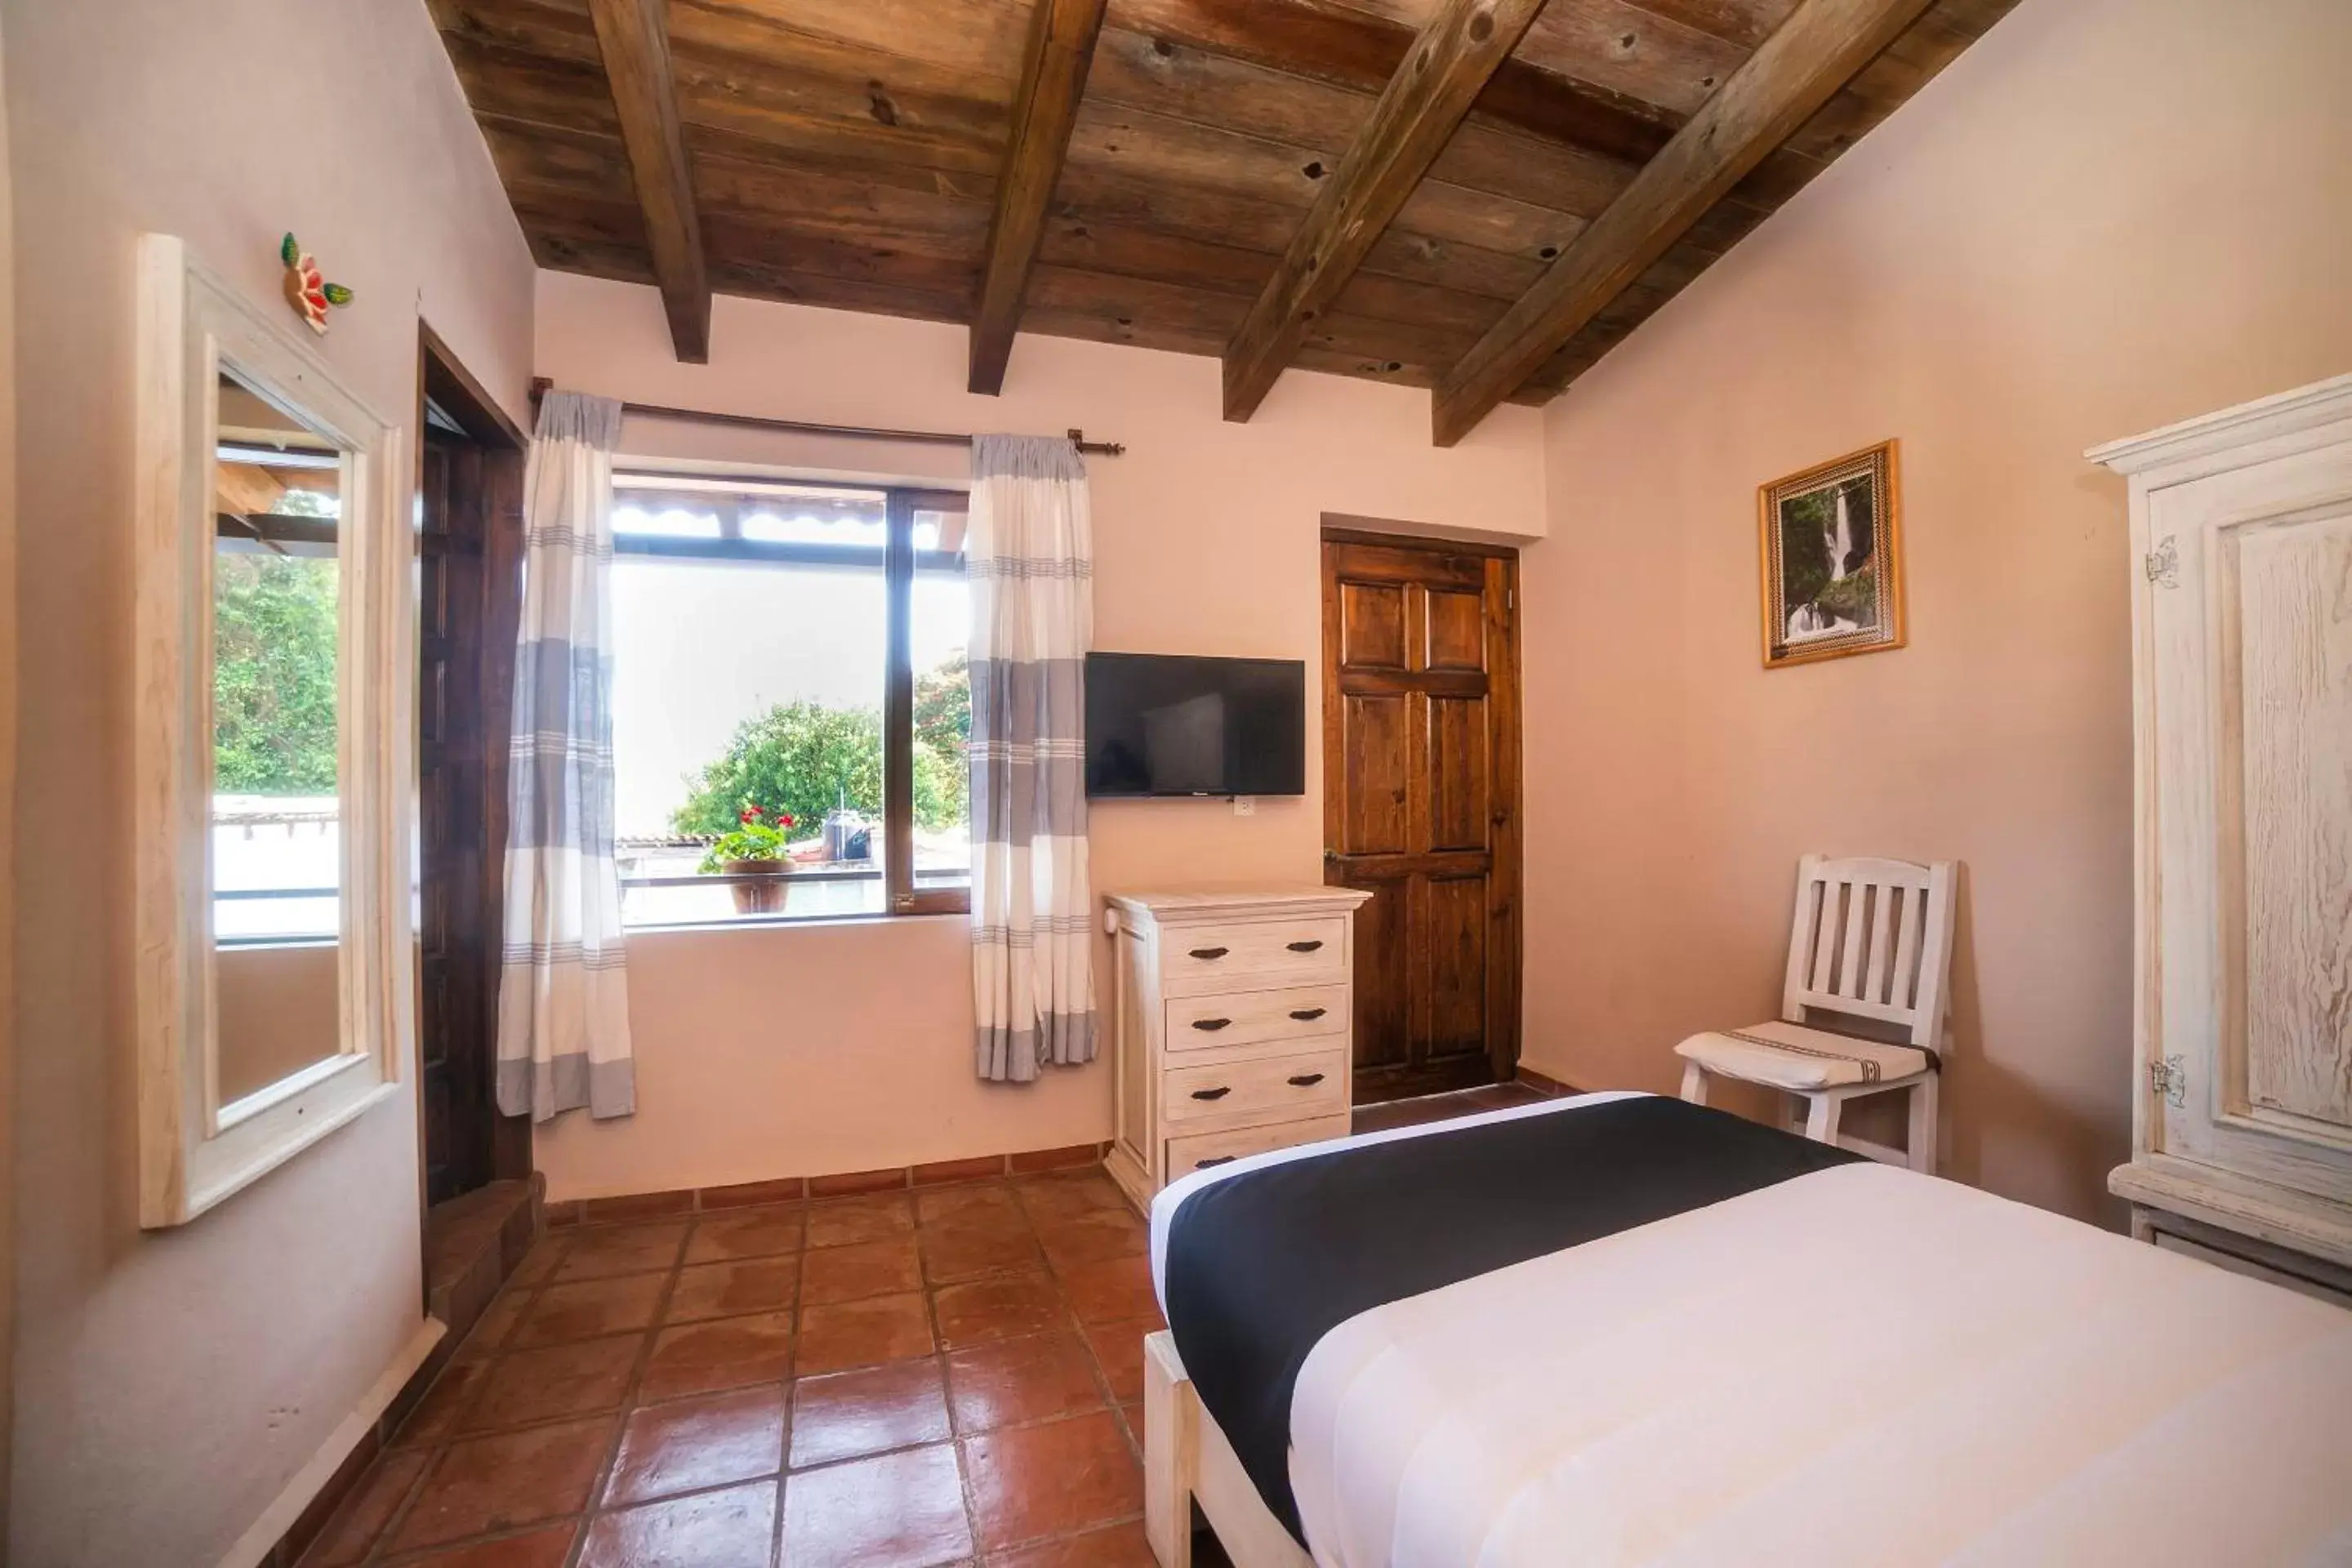 Bedroom in Hotel Rincon Soñado, Valle de Bravo